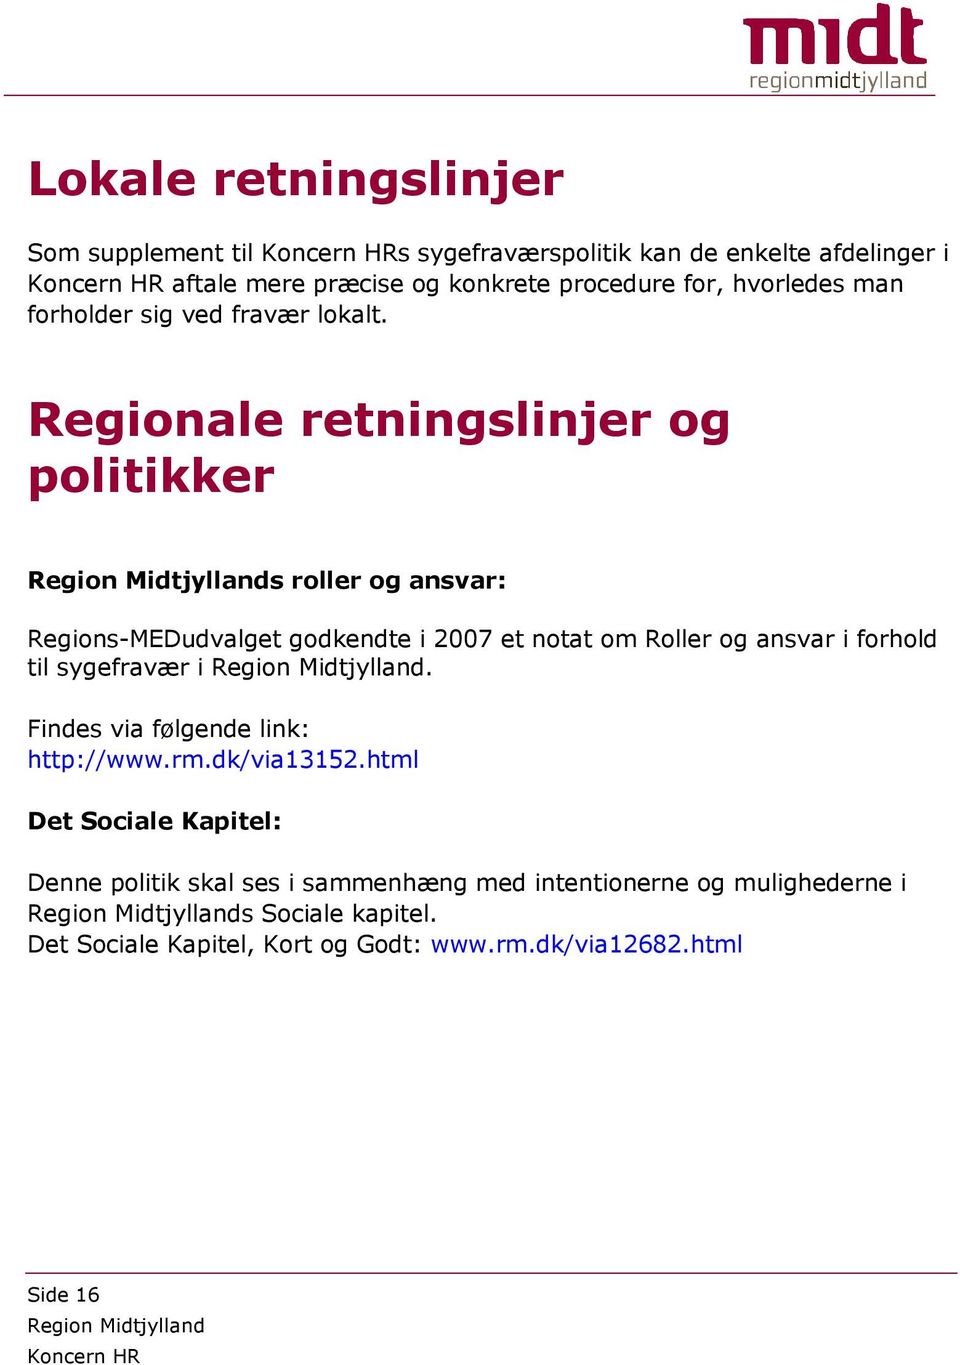 Regionale retningslinjer og politikker s roller og ansvar: Regions-MEDudvalget godkendte i 2007 et notat om Roller og ansvar i forhold til